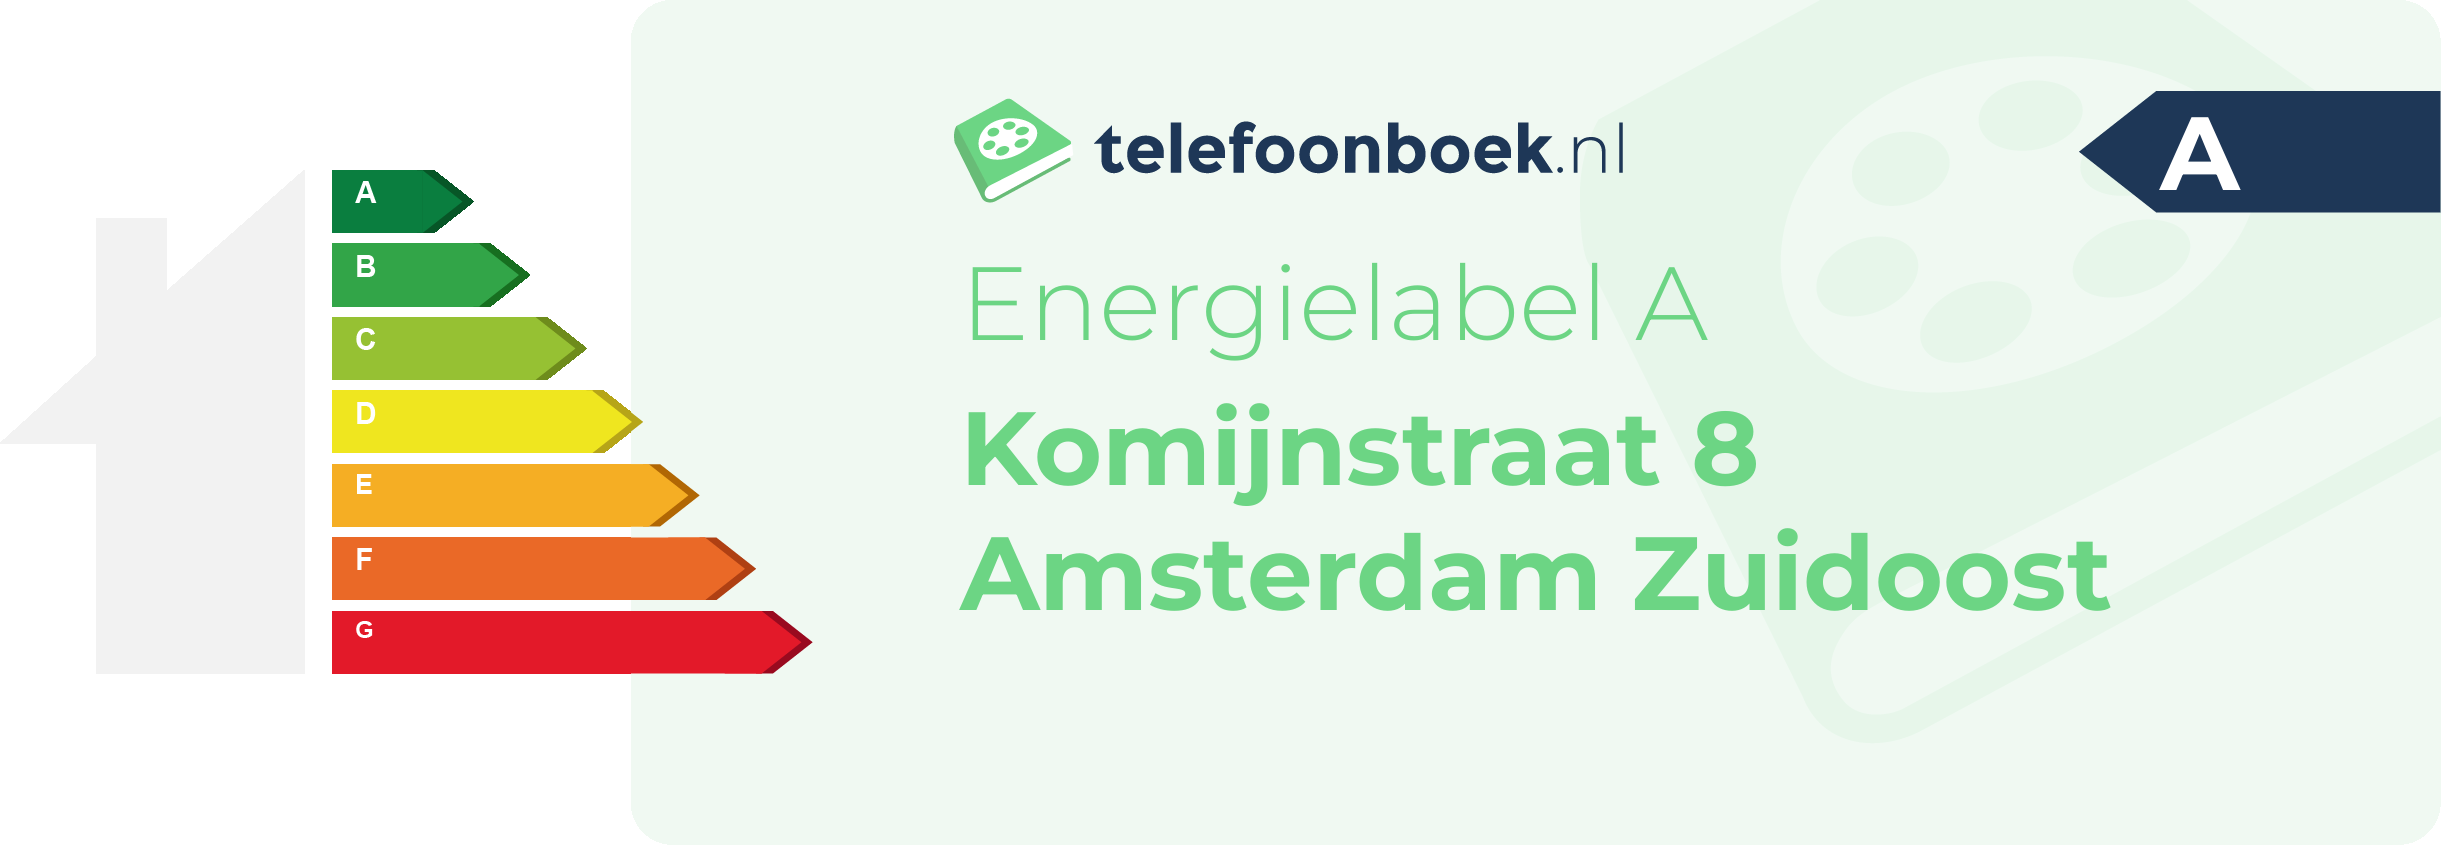 Energielabel Komijnstraat 8 Amsterdam Zuidoost